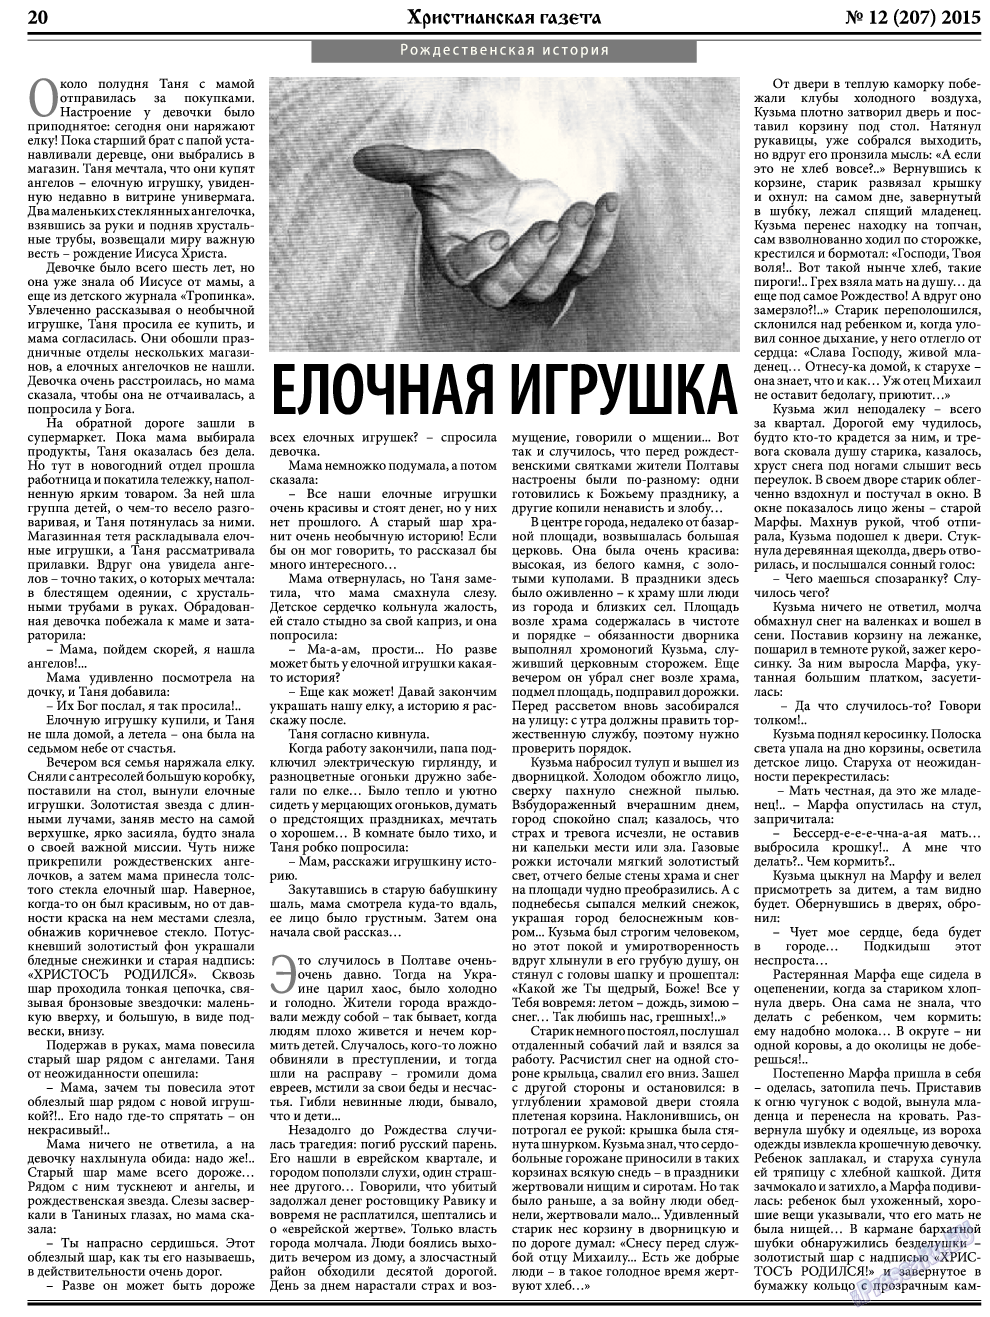 Христианская газета, газета. 2015 №12 стр.28